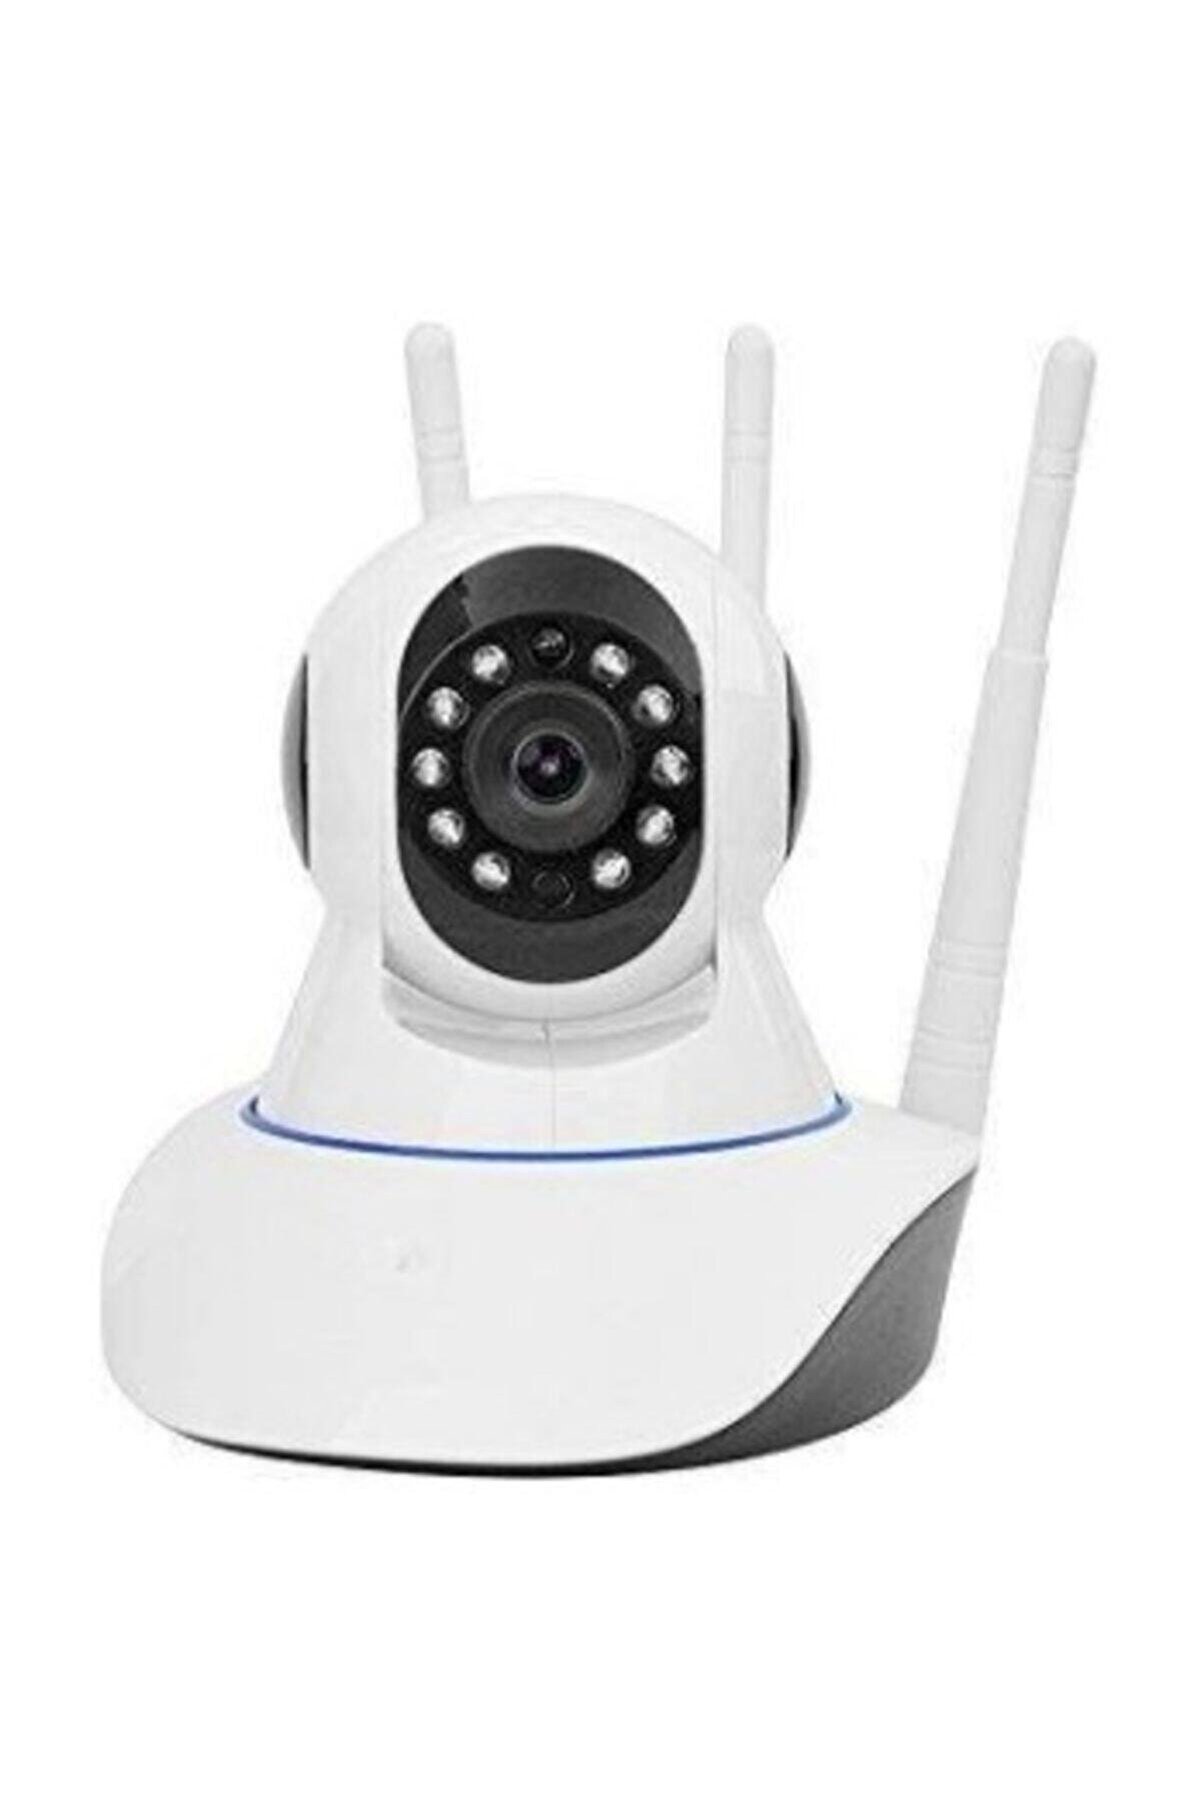 DEXTEL Hd 360 Derece Wifi Ip Kamera Gece Görüş 3 Antenli Güvenlik Ve Bebek Izleme Kamerası